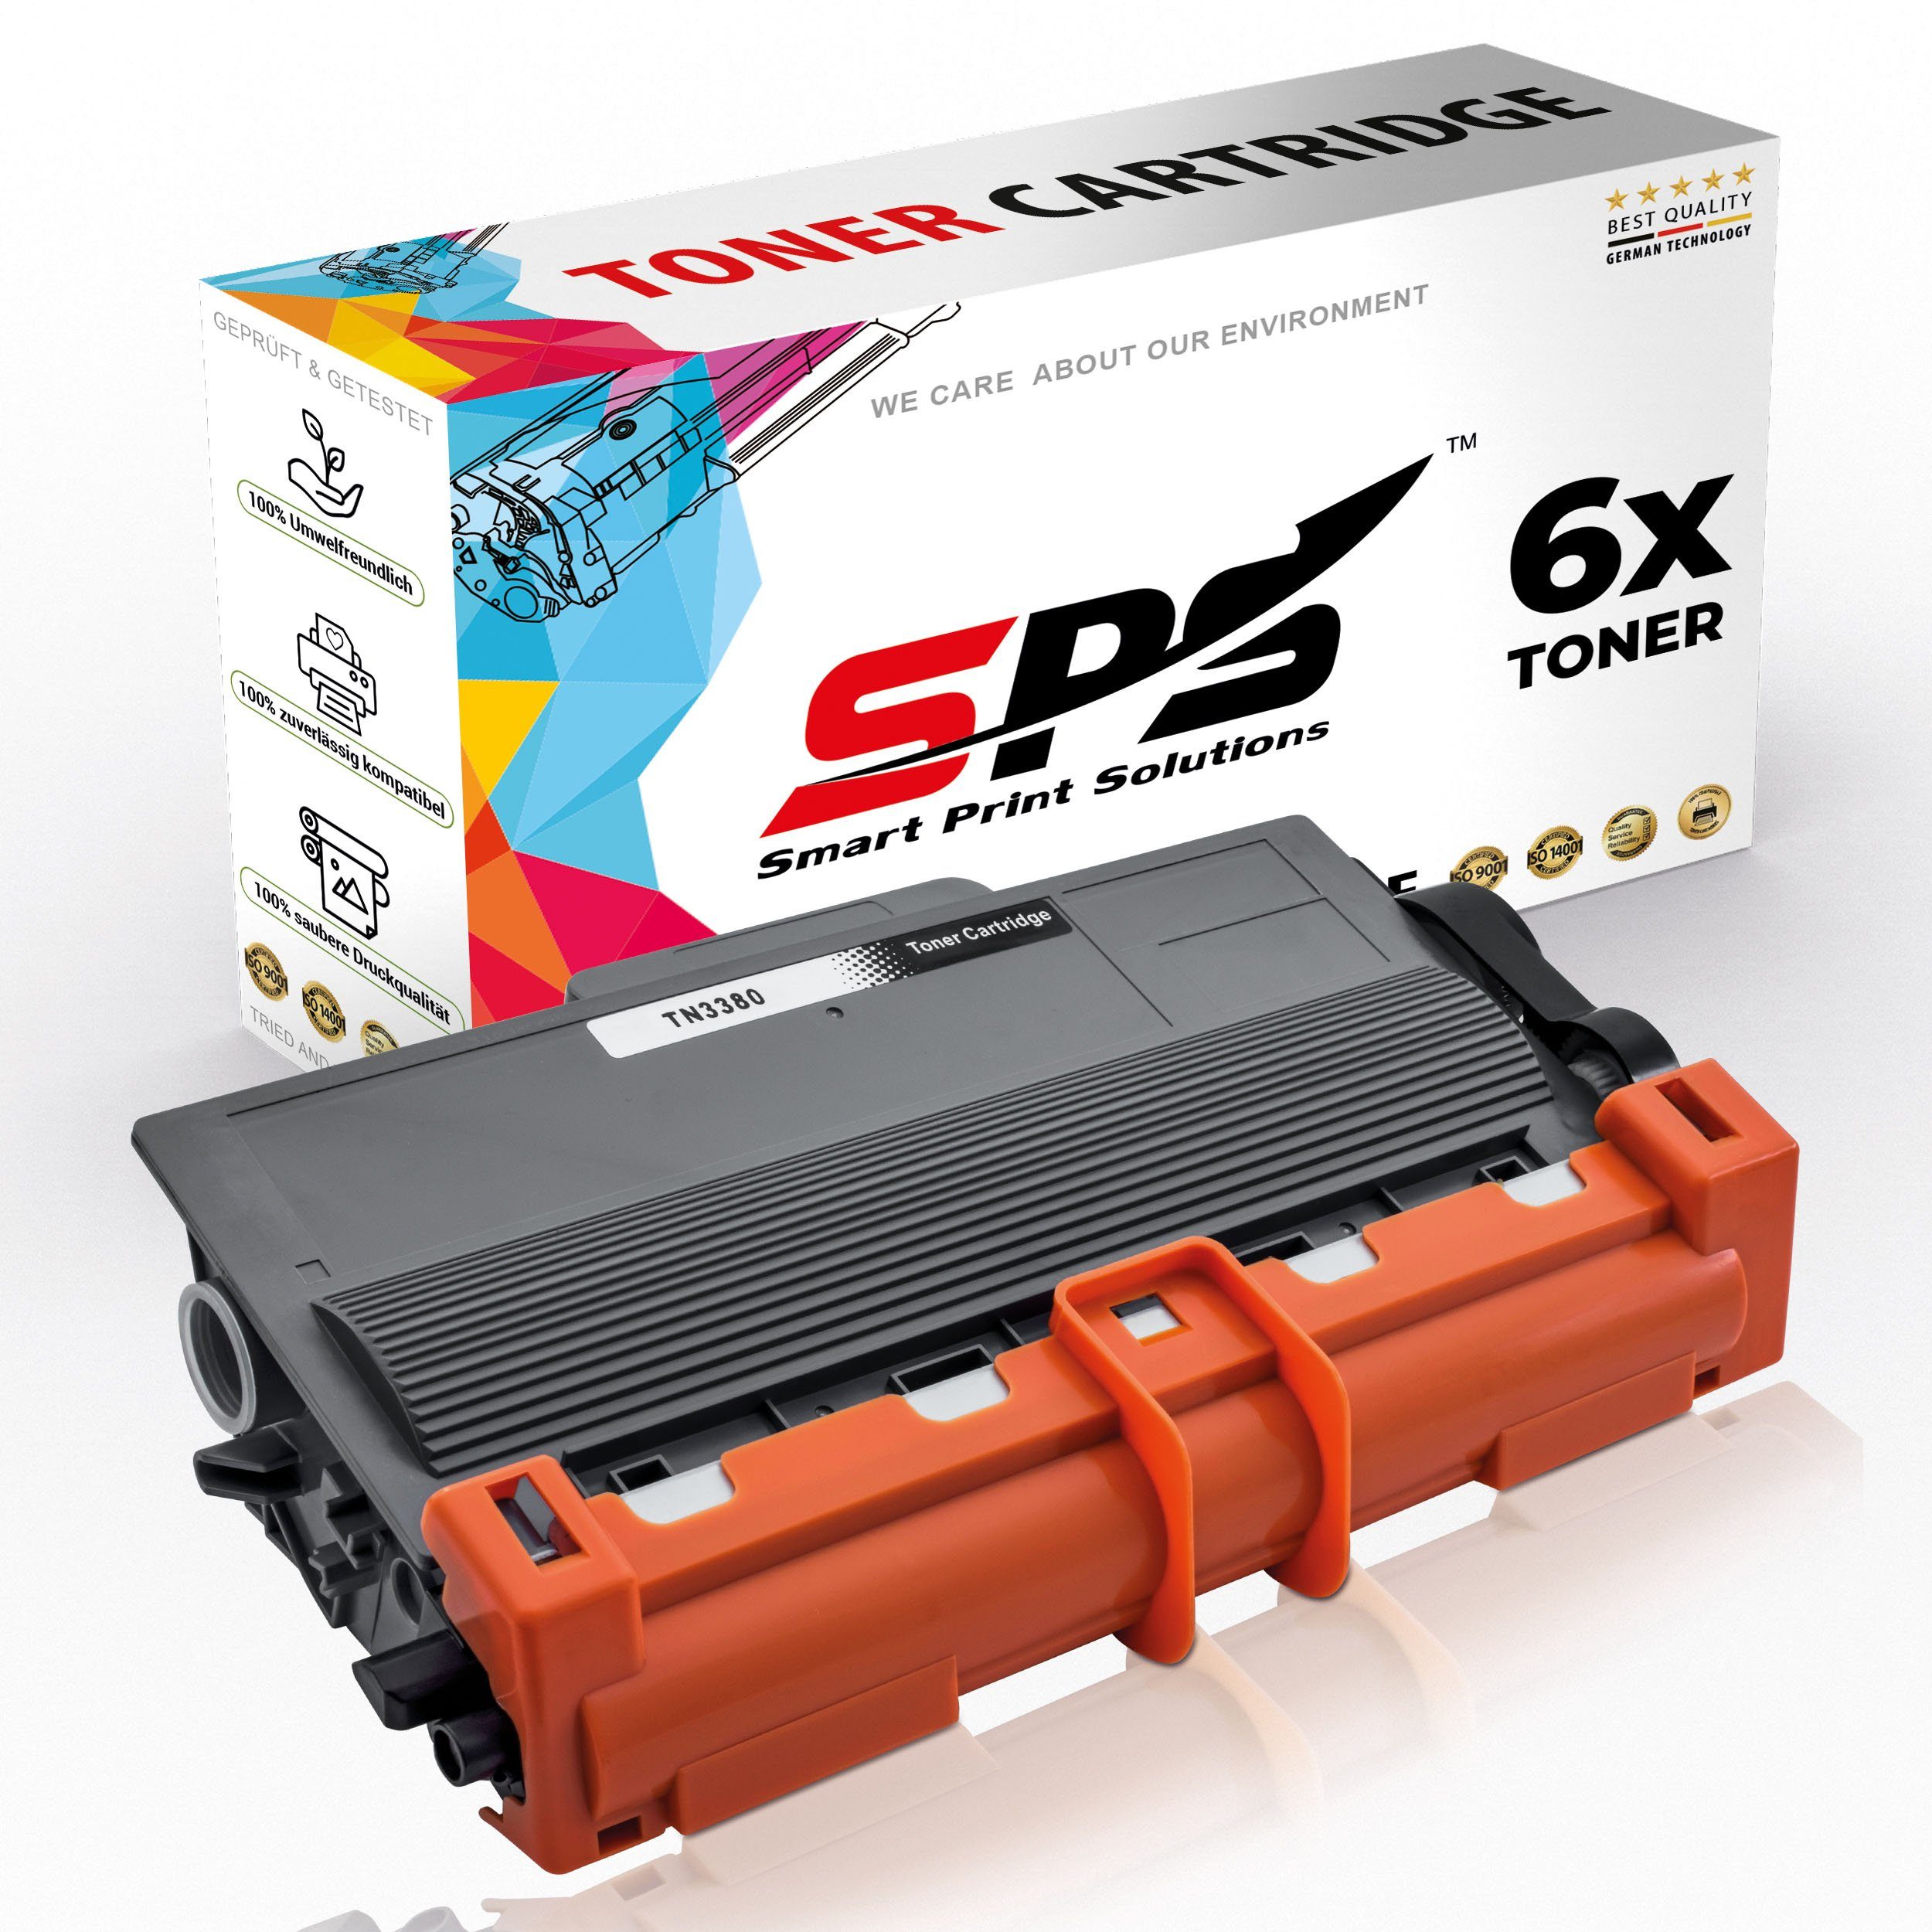 SPS Tonerkartusche Kompatibel für Brother MFC-8550 TN-3380, (6er Pack)